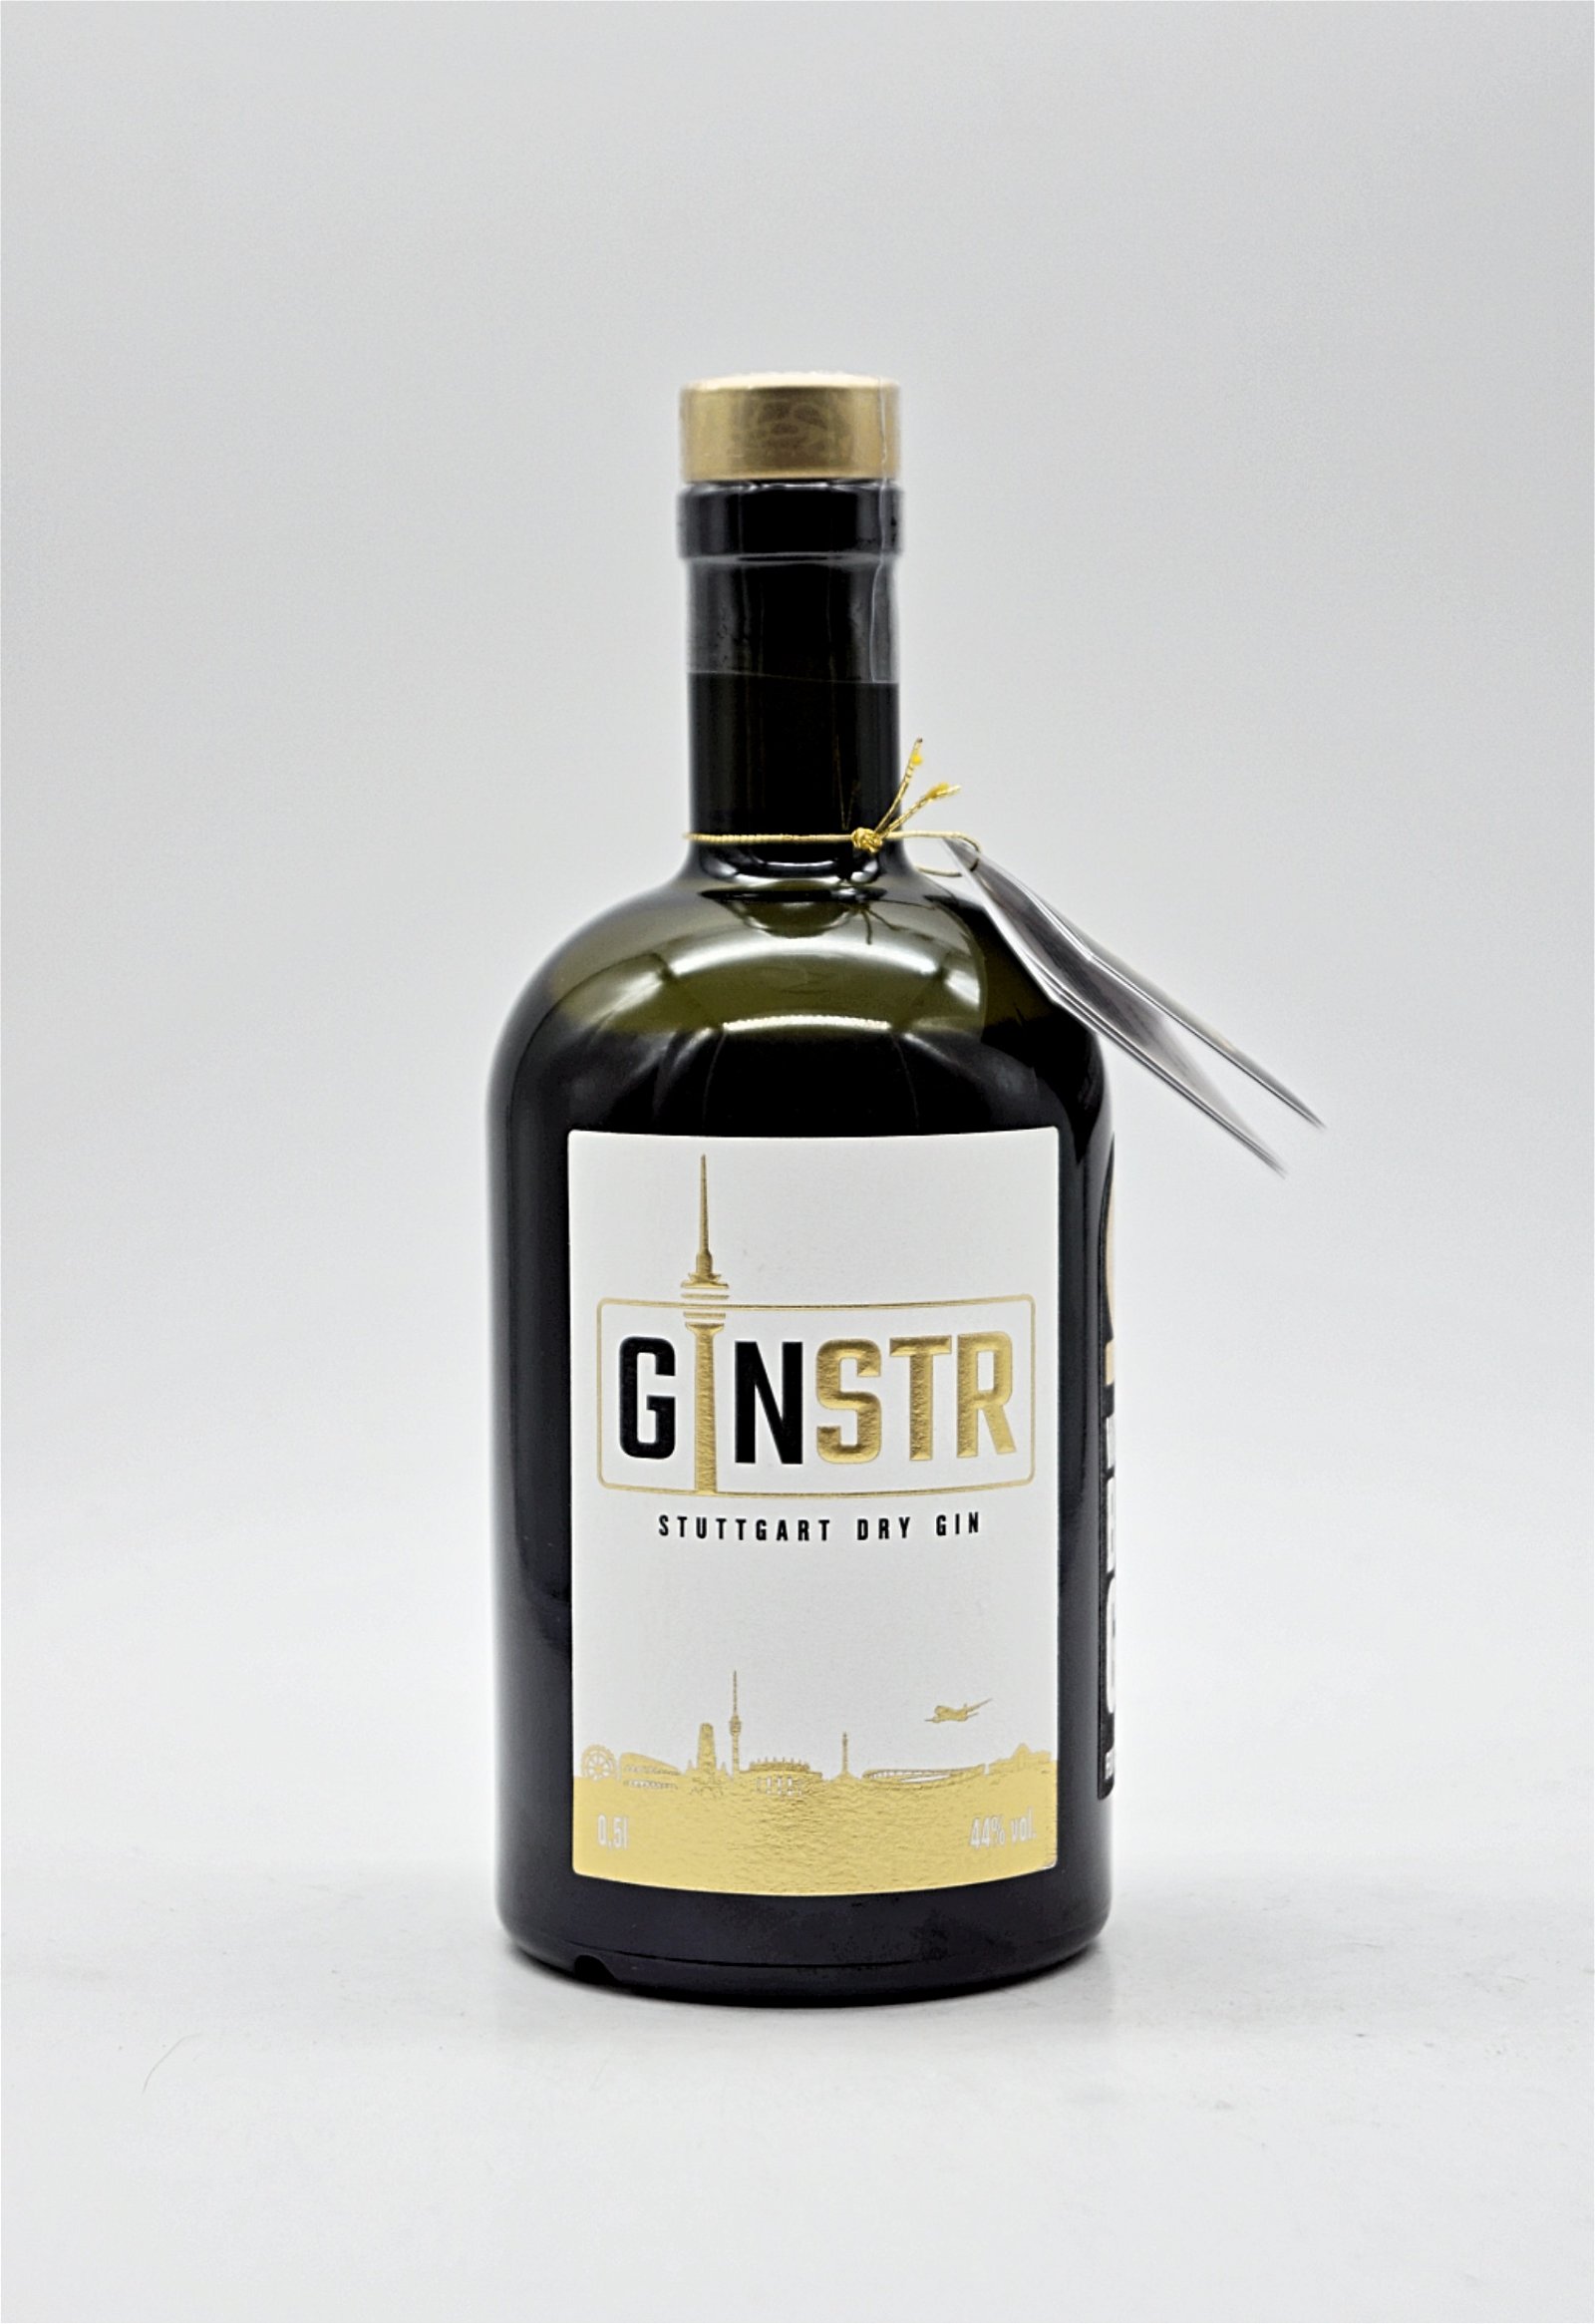 Ginstr Stuttgart Dry Gin